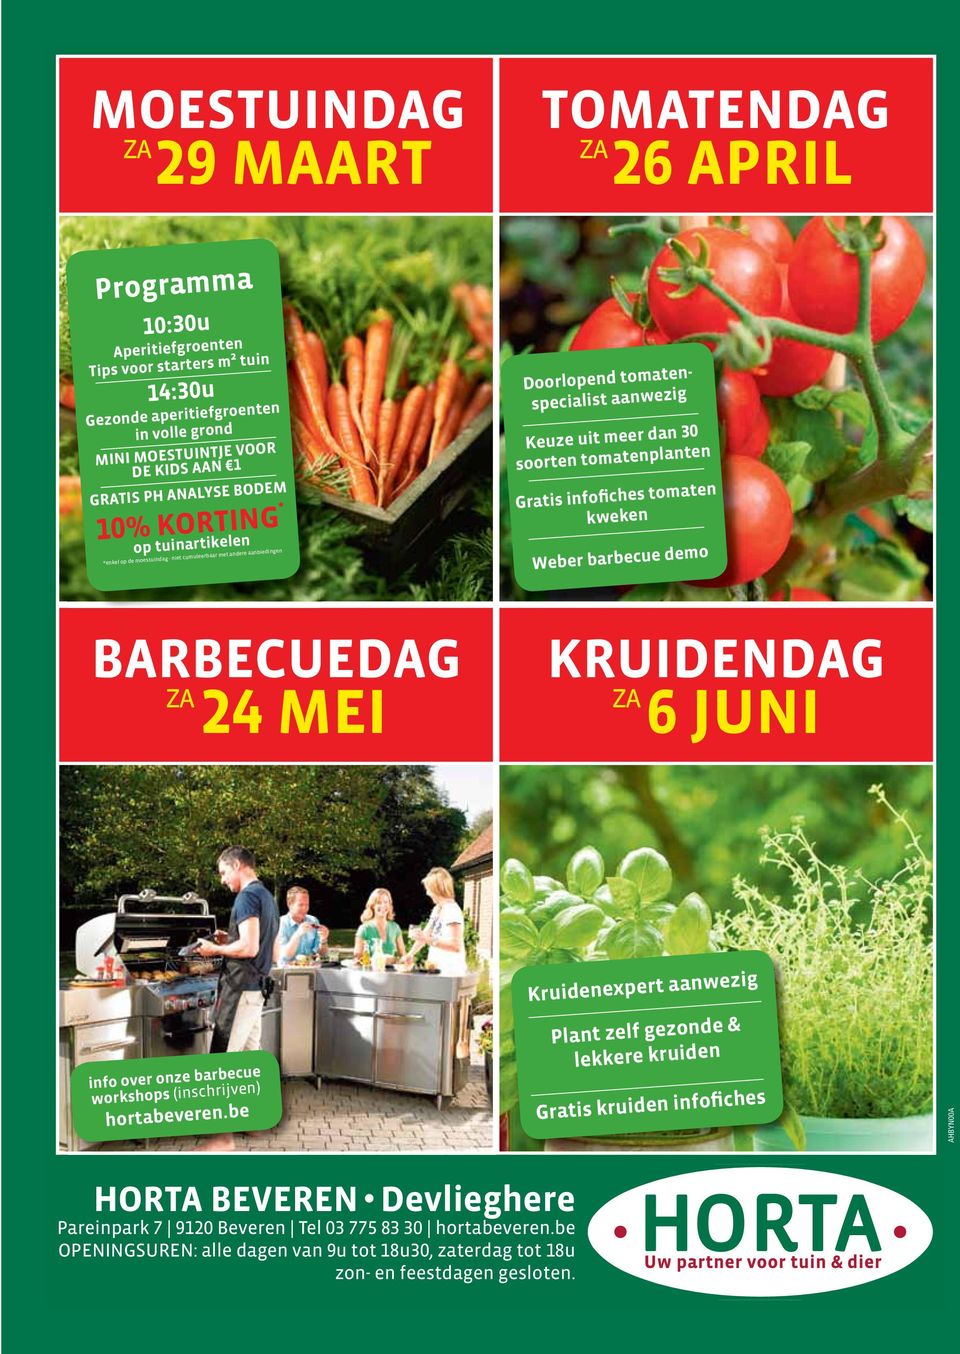 Gratis infofiches tomaten kweken Weber barbecue demo BARBECUEDAG ZA 24 MEI KRUIDENDAG ZA 6 JUNI info over onze barbecue workshops (inschrijven) hortabeveren.